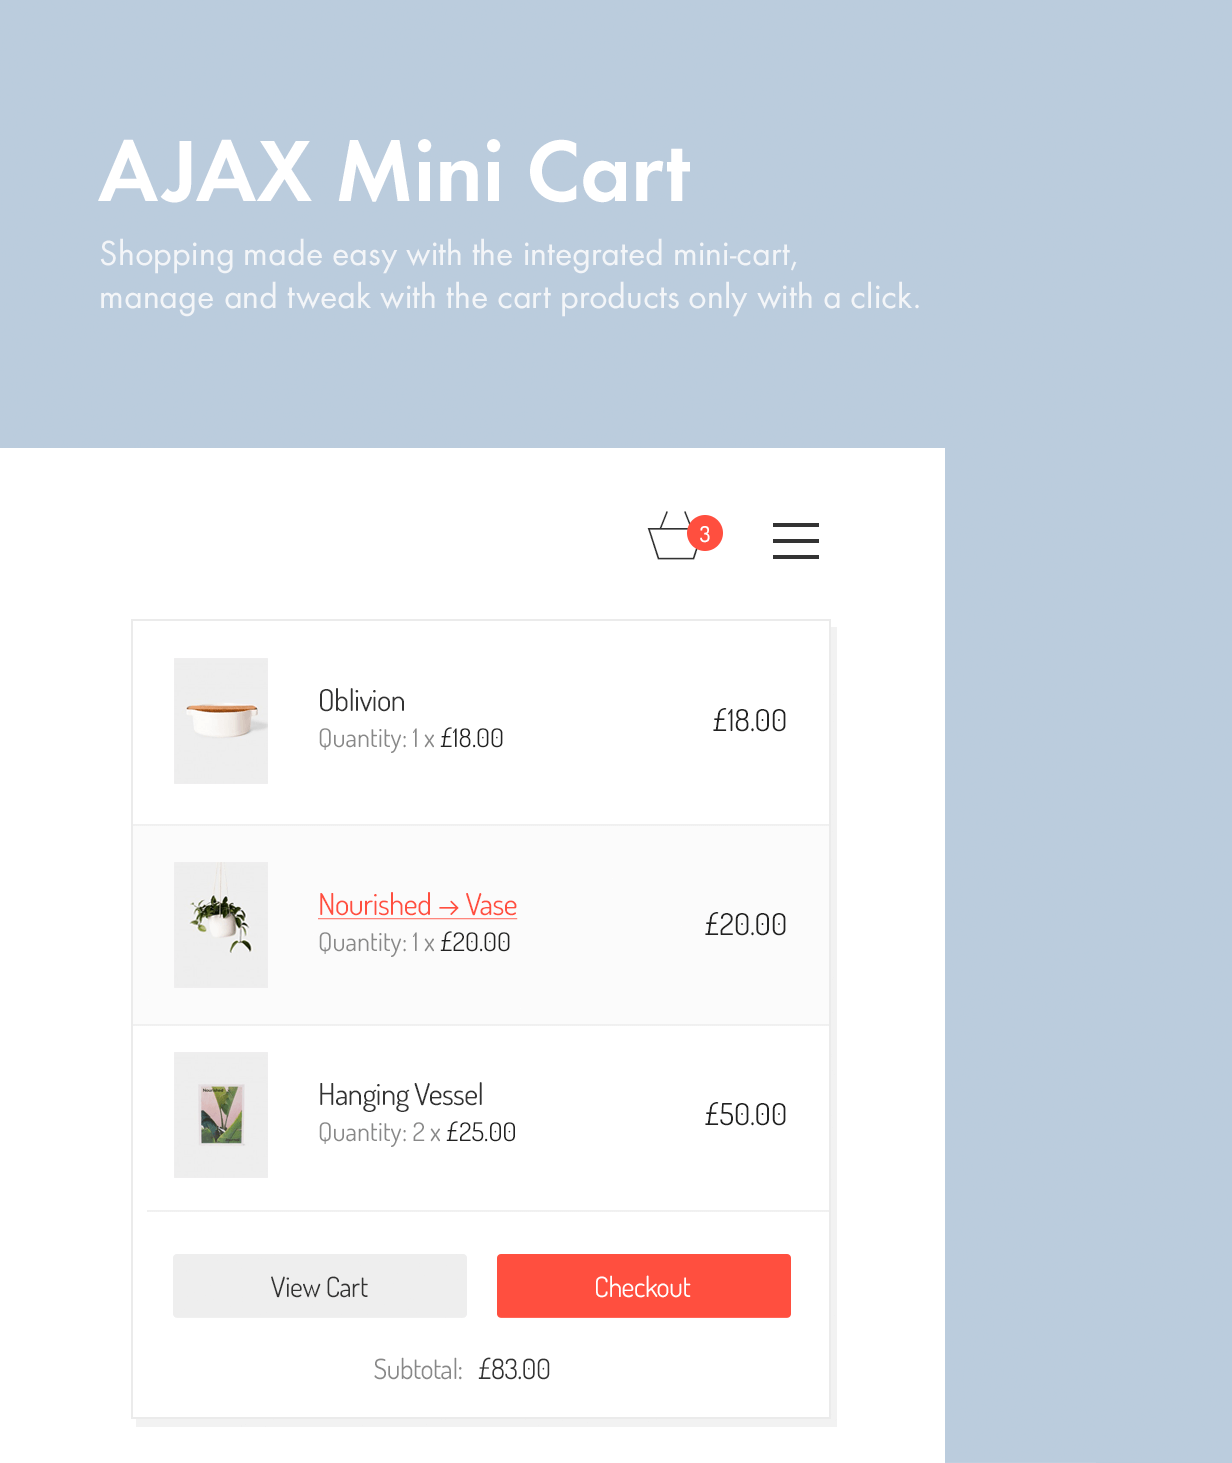 AJAX Mini Cart